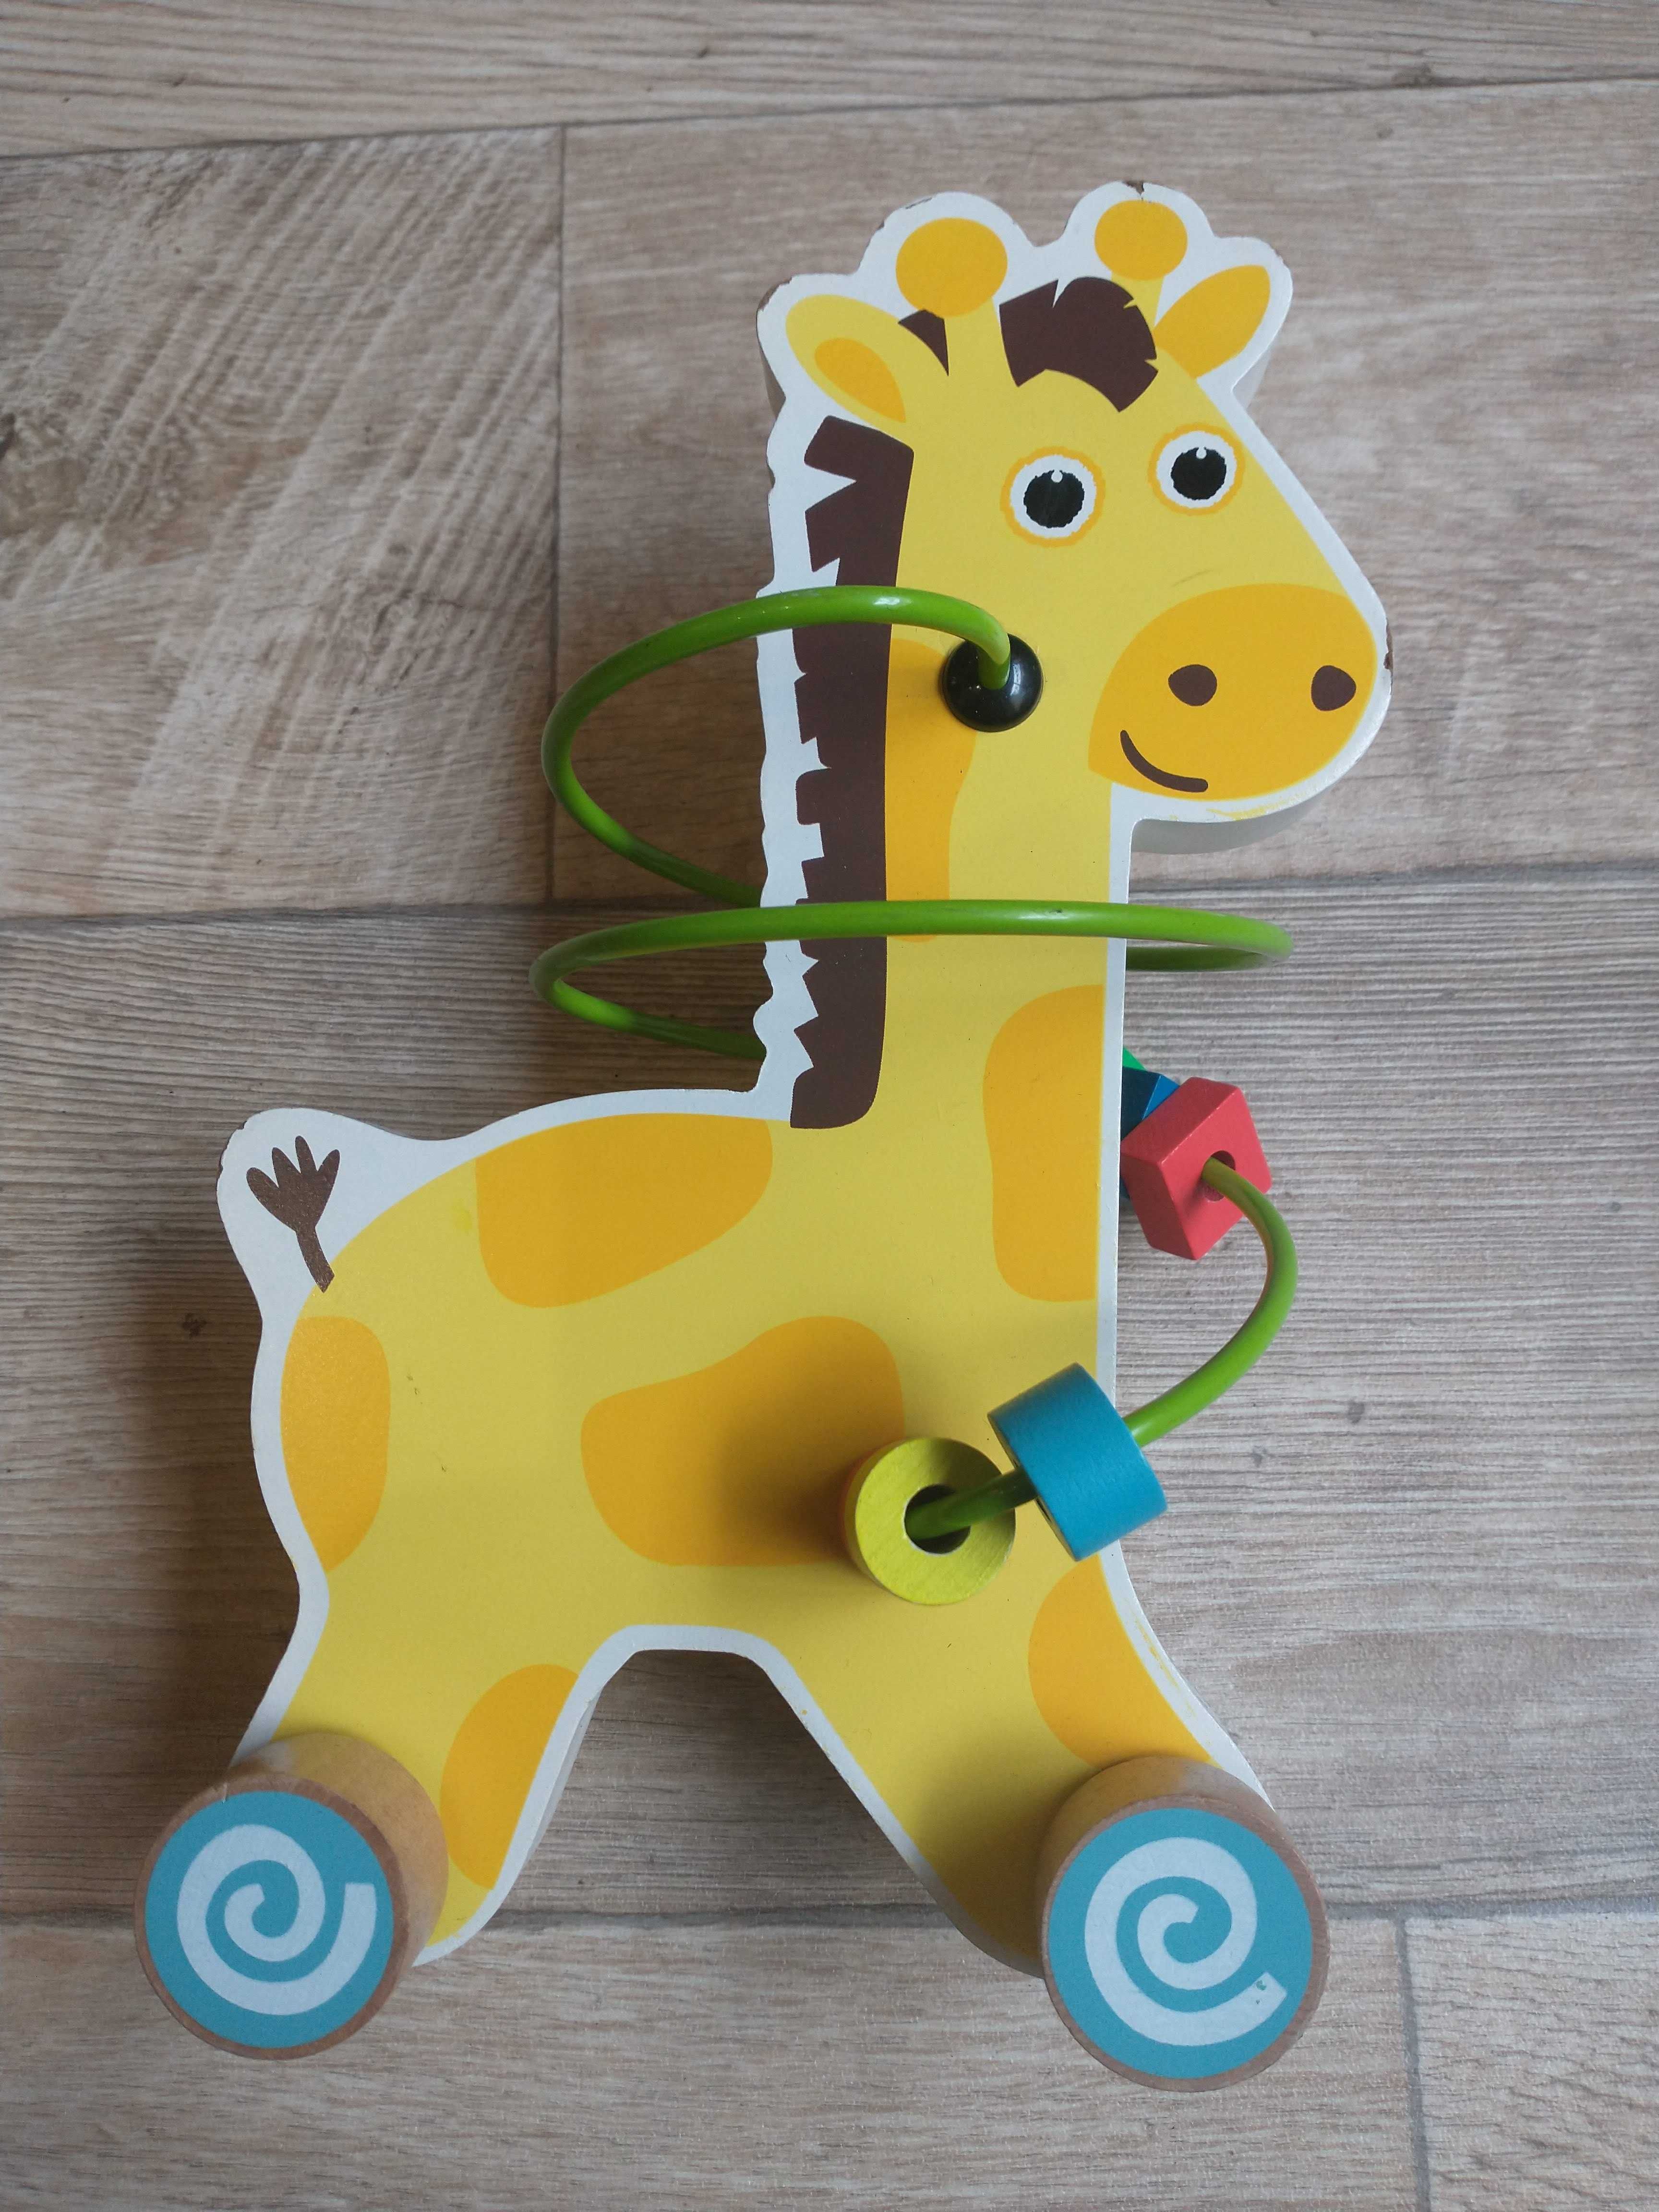 Zabawka edukacyjna żyrafa manualna drewno metal eko zręczność